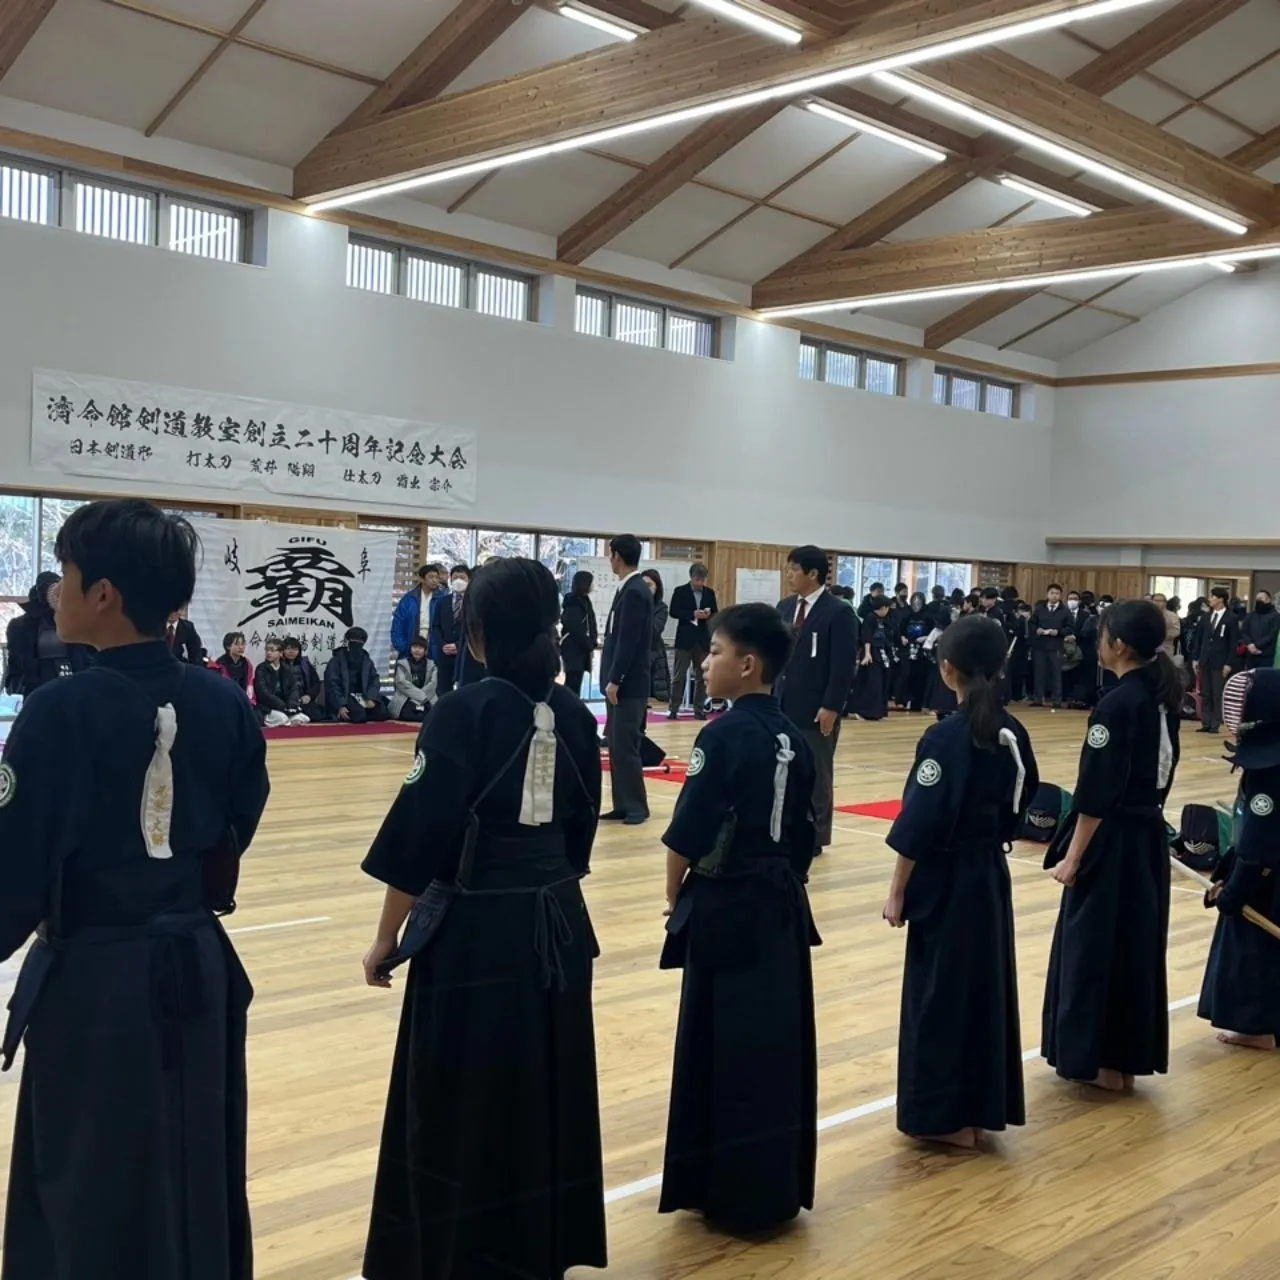 濟命館剣道教室二十周年記念大会に参加させていただきました